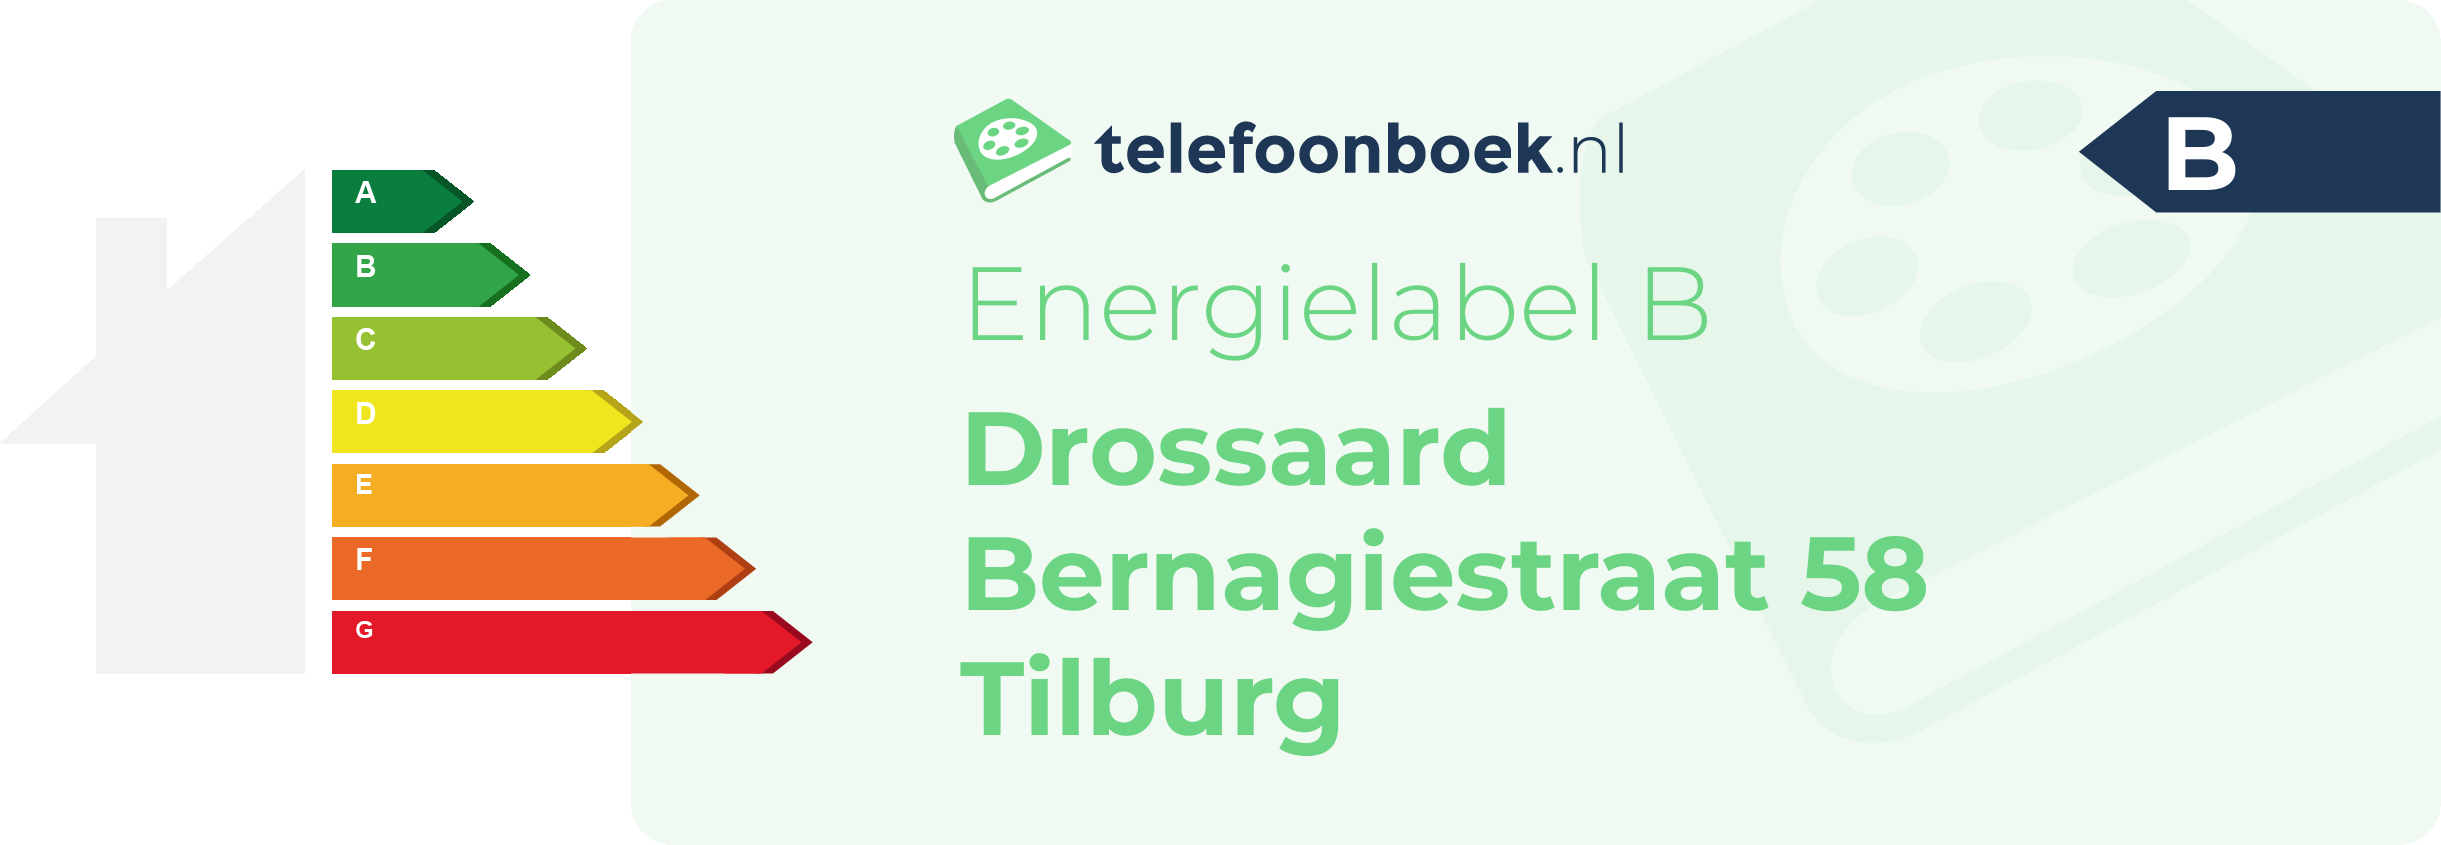 Energielabel Drossaard Bernagiestraat 58 Tilburg